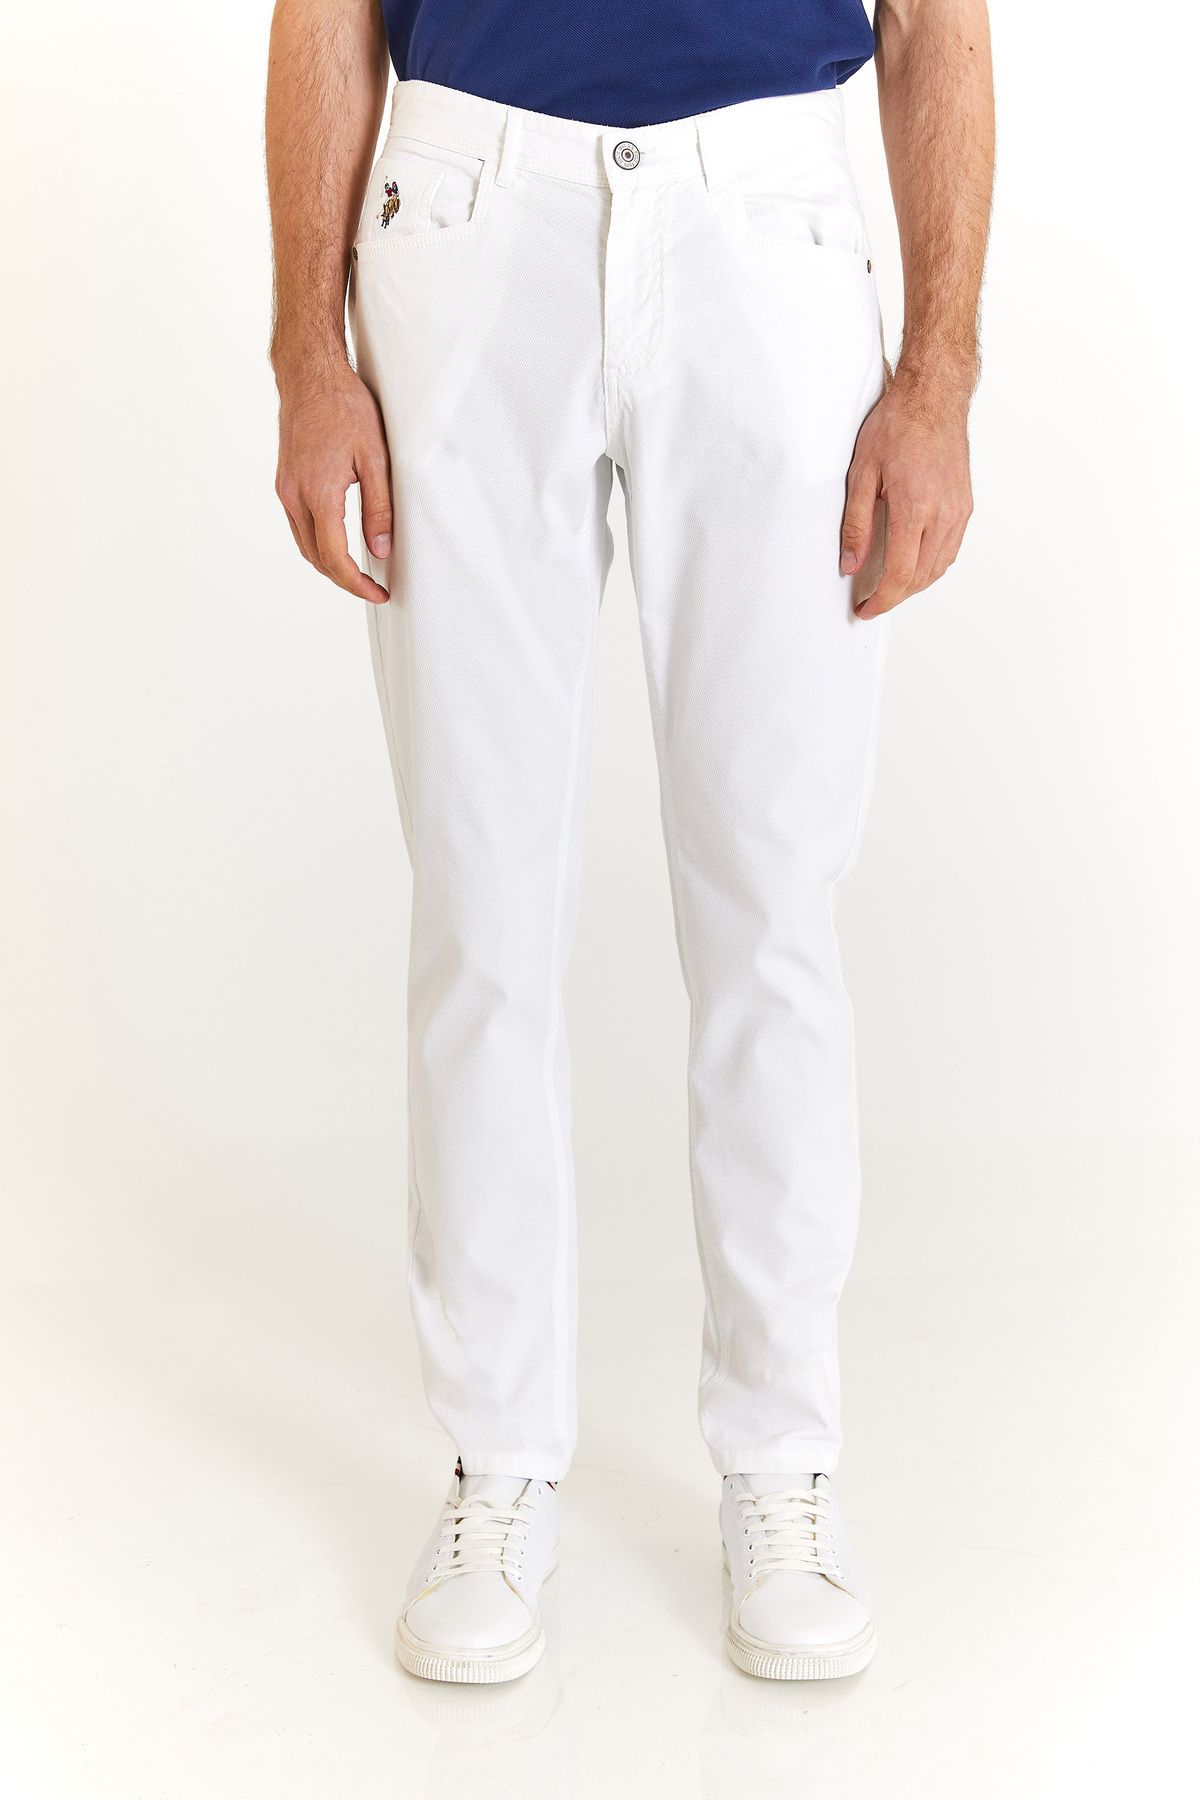 U.S. Polo Assn. U.S. Polo Assn. Standart Kalıp Düz Paça Normal Bel Beyaz Erkek Pantolon 1873679